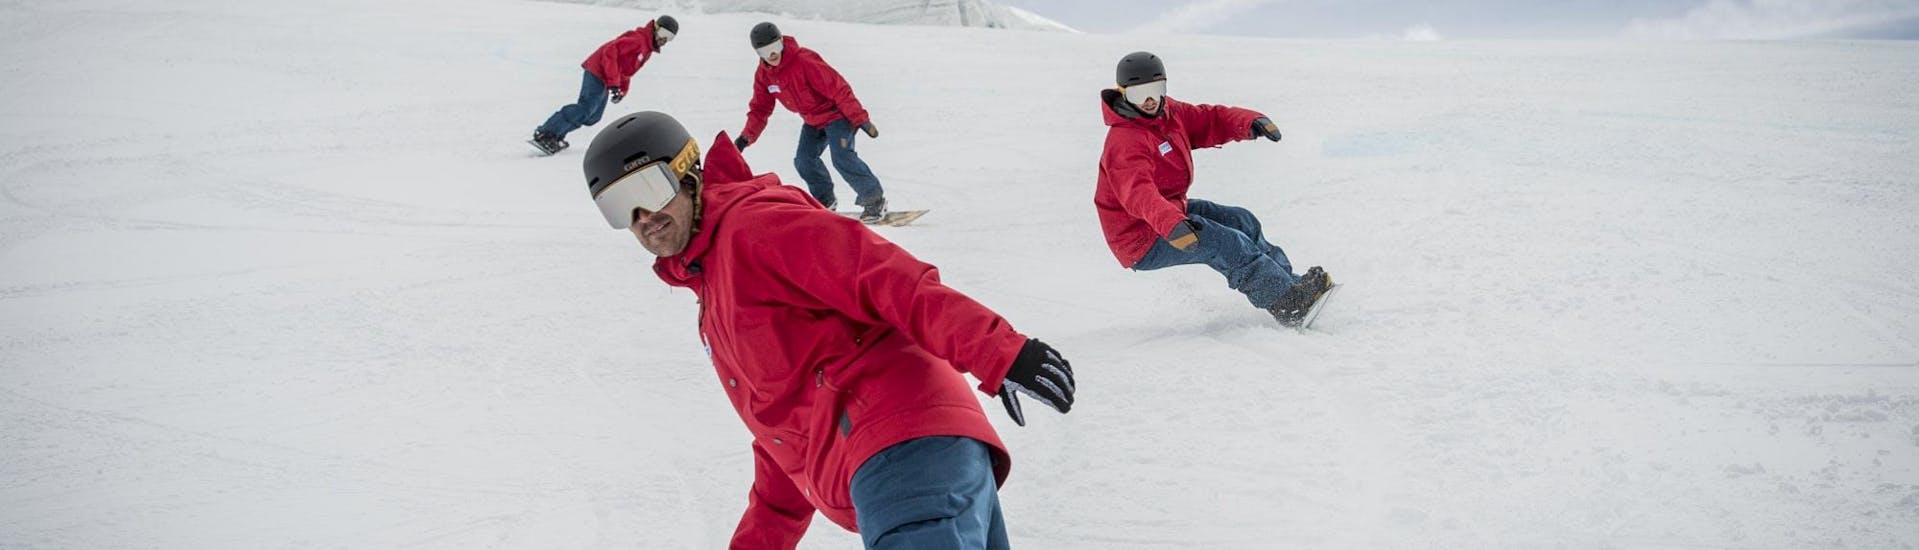 Lezioni di Snowboard a partire da 16 anni con esperienza.